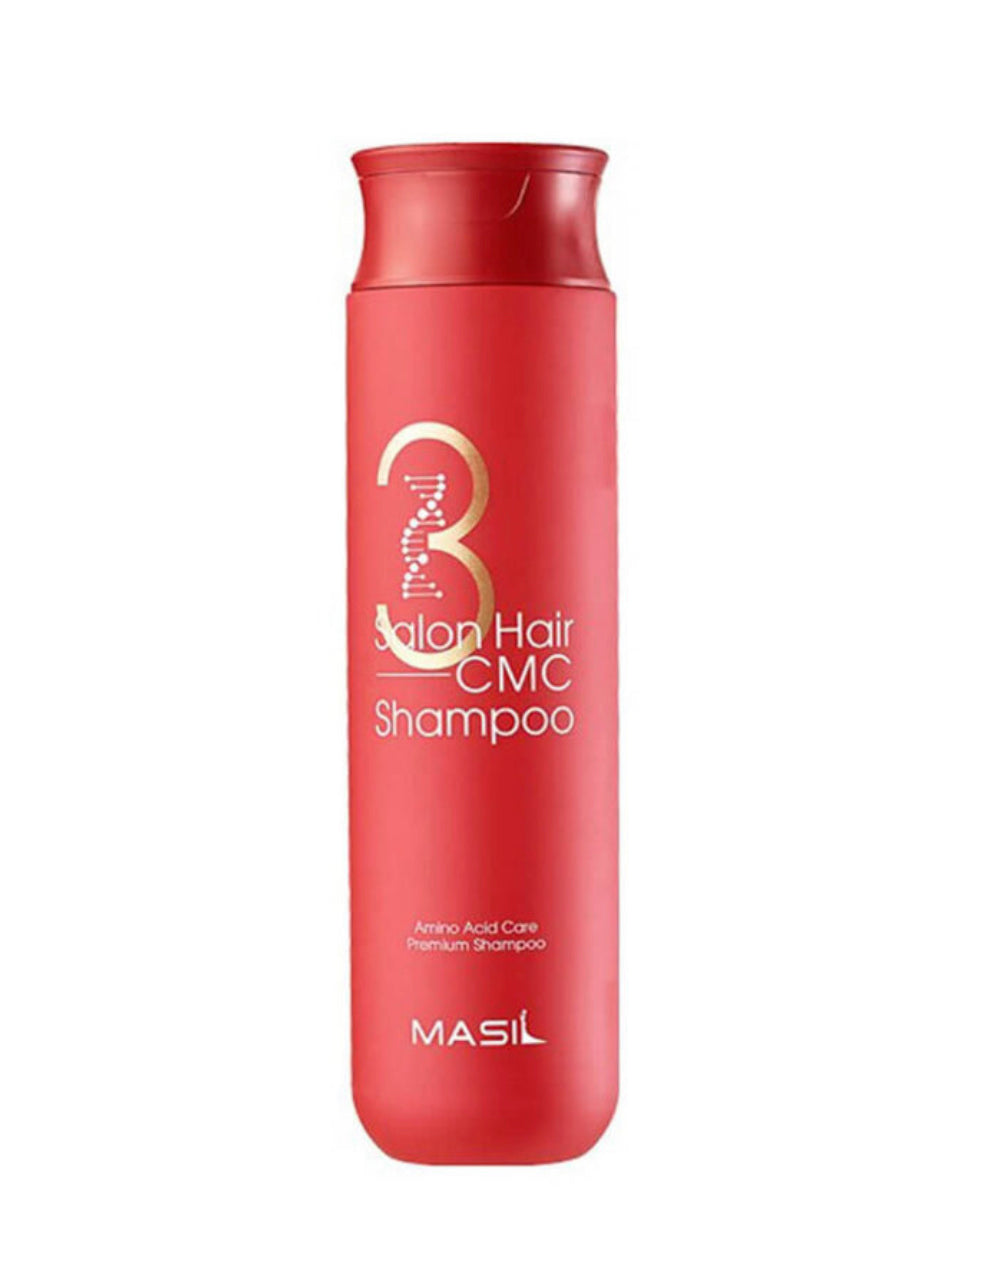 Atjaunojošs šampūns Masil 3 Salon Hair CMC Shampoo 300ml (bez kastes) (sale)